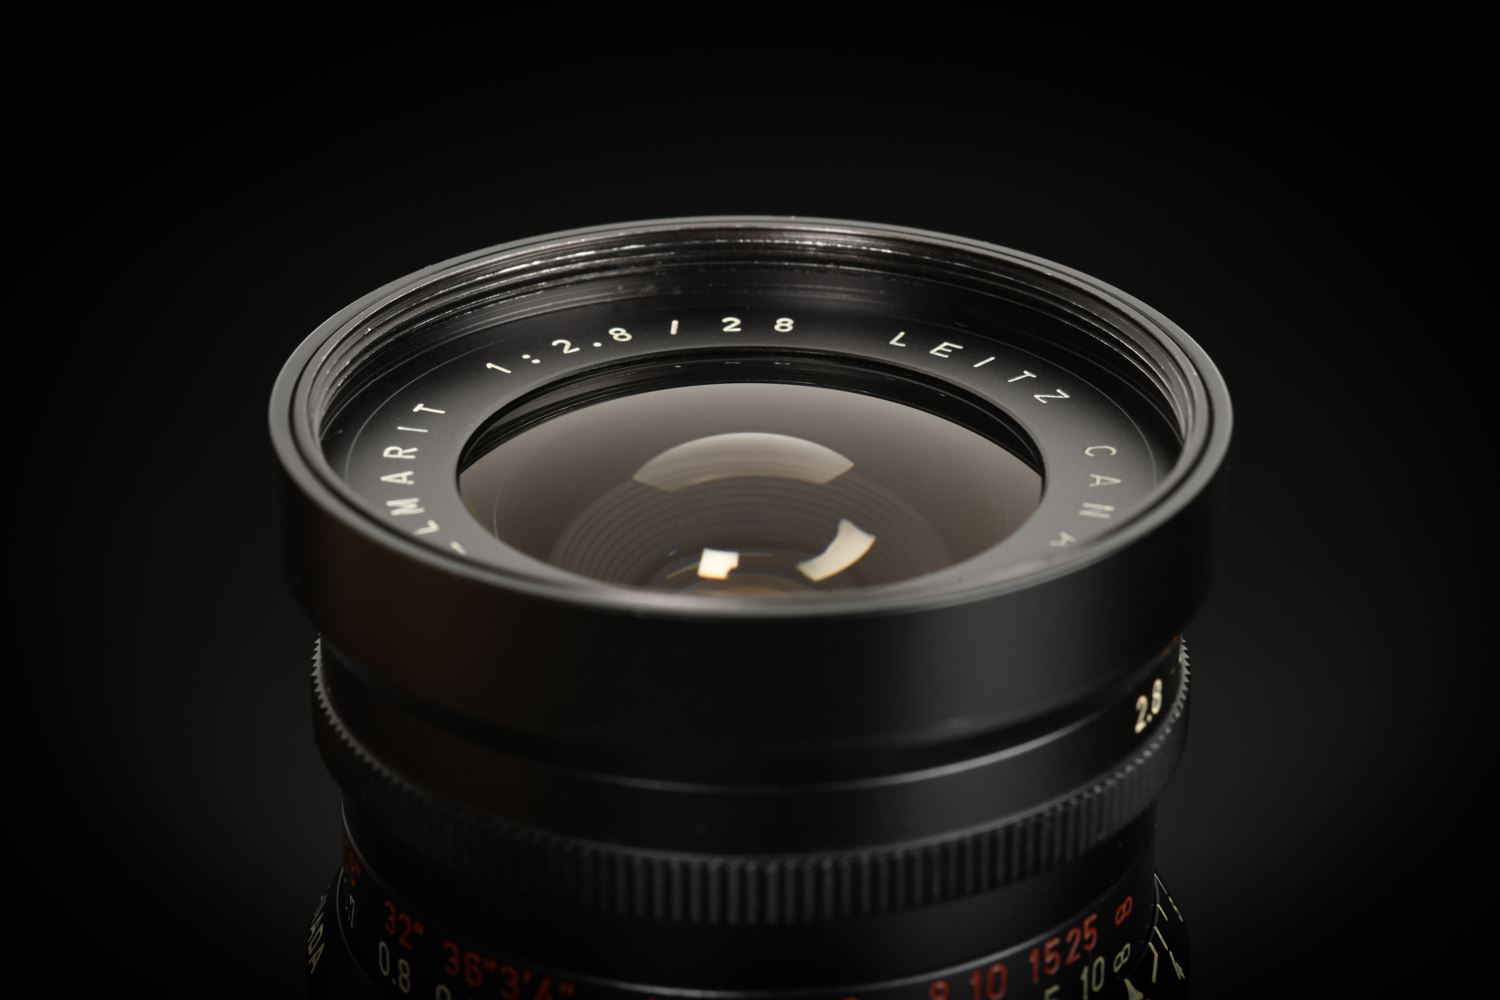 Picture of Leica Elmarit-M 28mm f/2.8 Ver.1 Canada 9-element